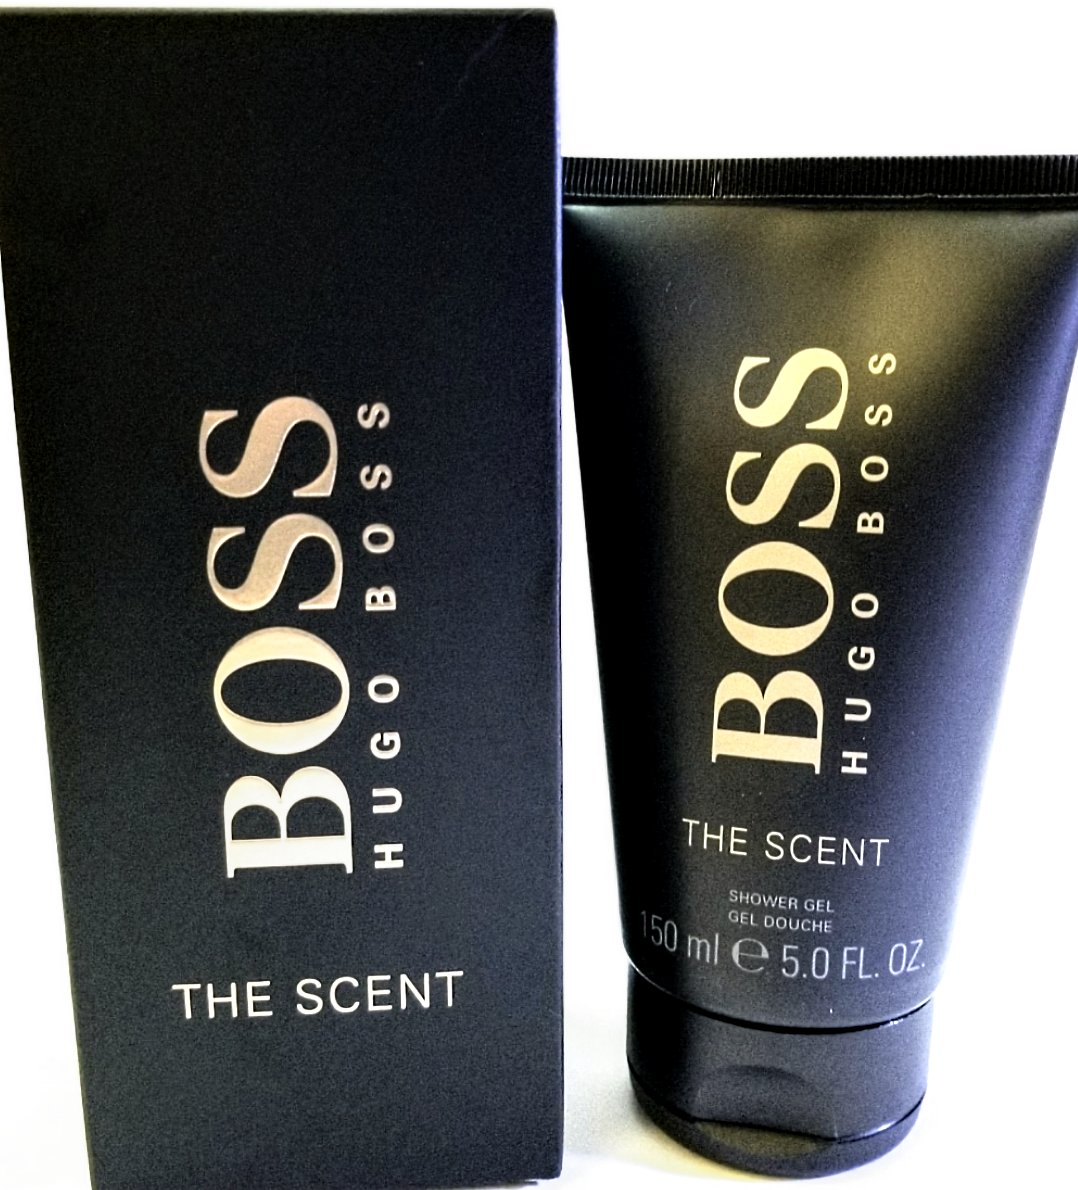 Hugo Boss The Scent 150 ml Shower Gel for Men